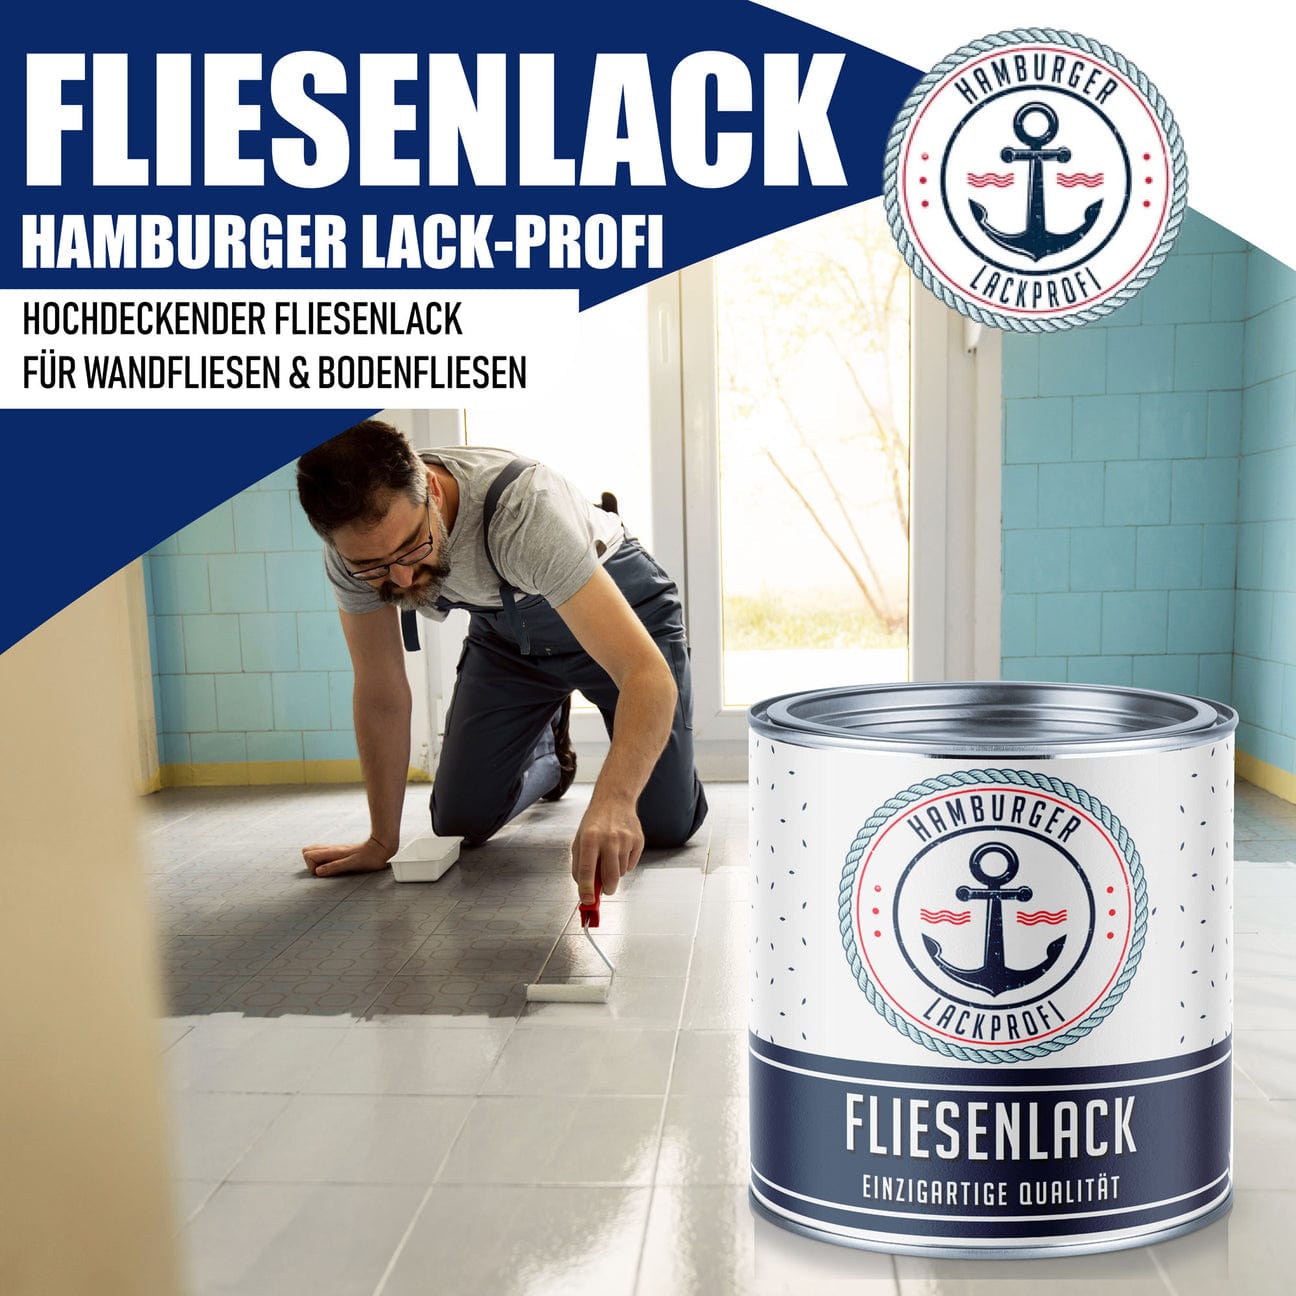 Hamburger Lack-Profi Hamburger Lack-Profi Fliesenlack Rotbraun RAL 8012 - hochdeckende Fliesenfarbe Braun